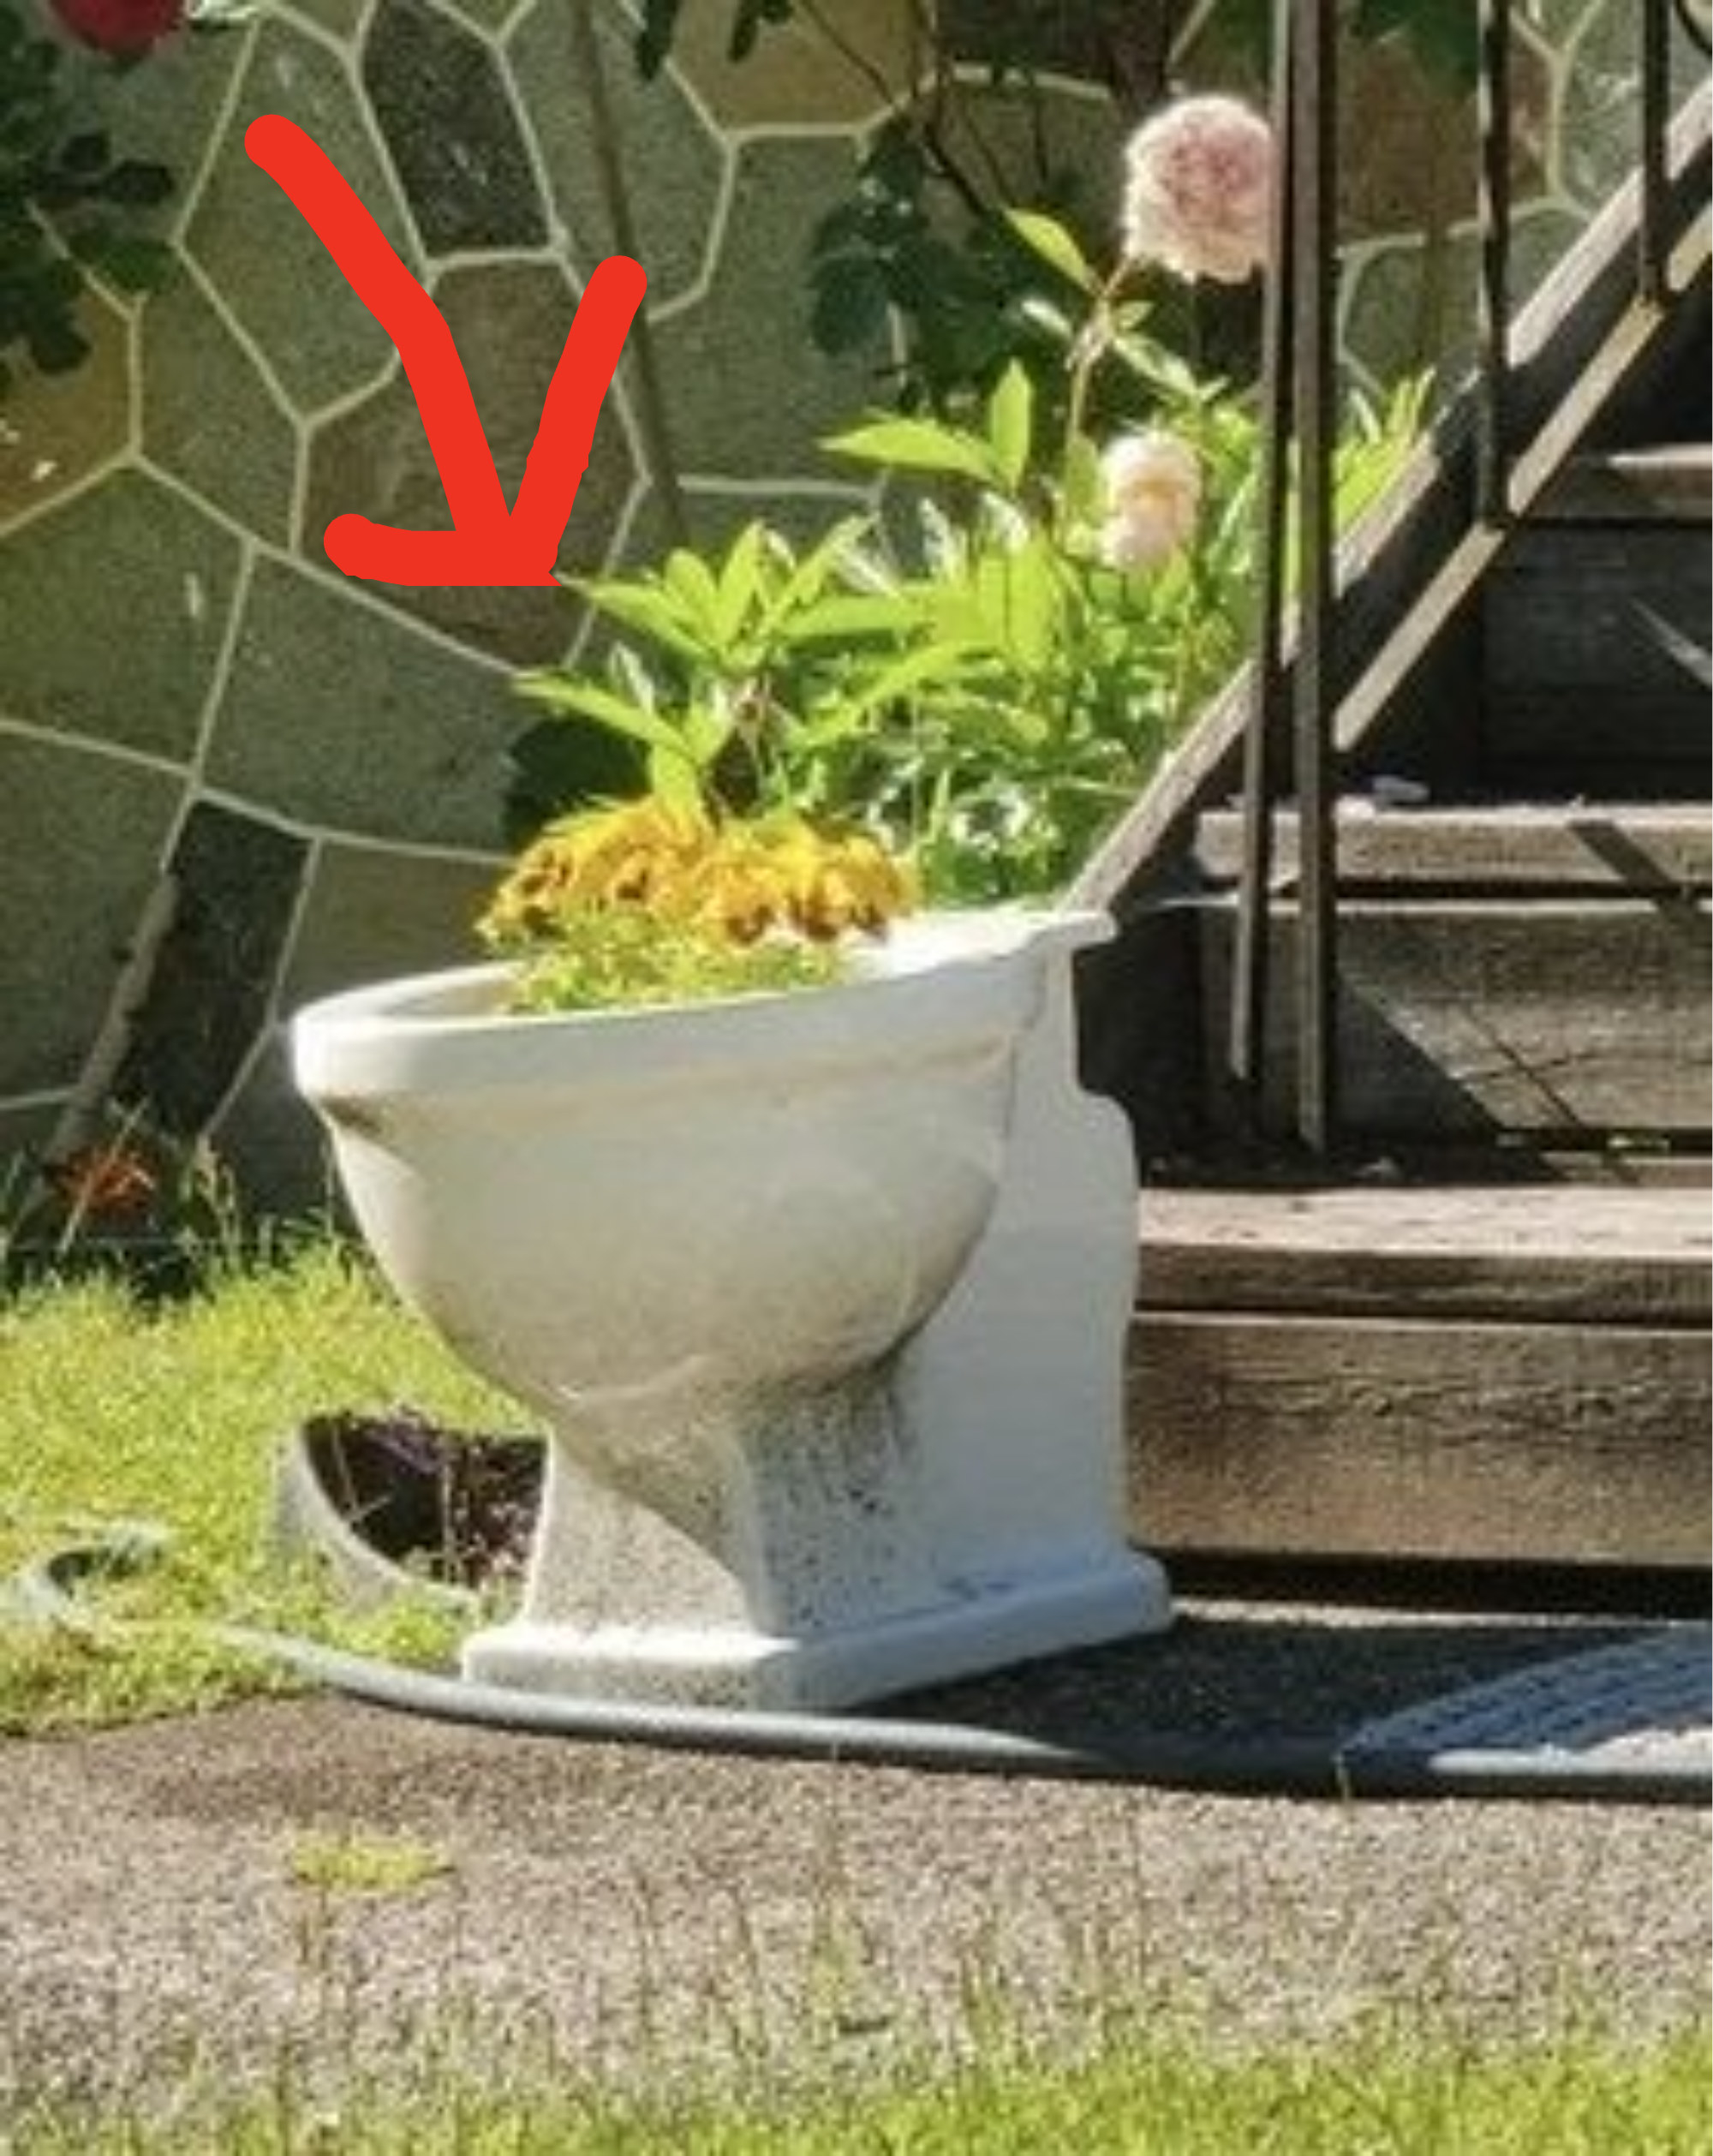 A toilet planter